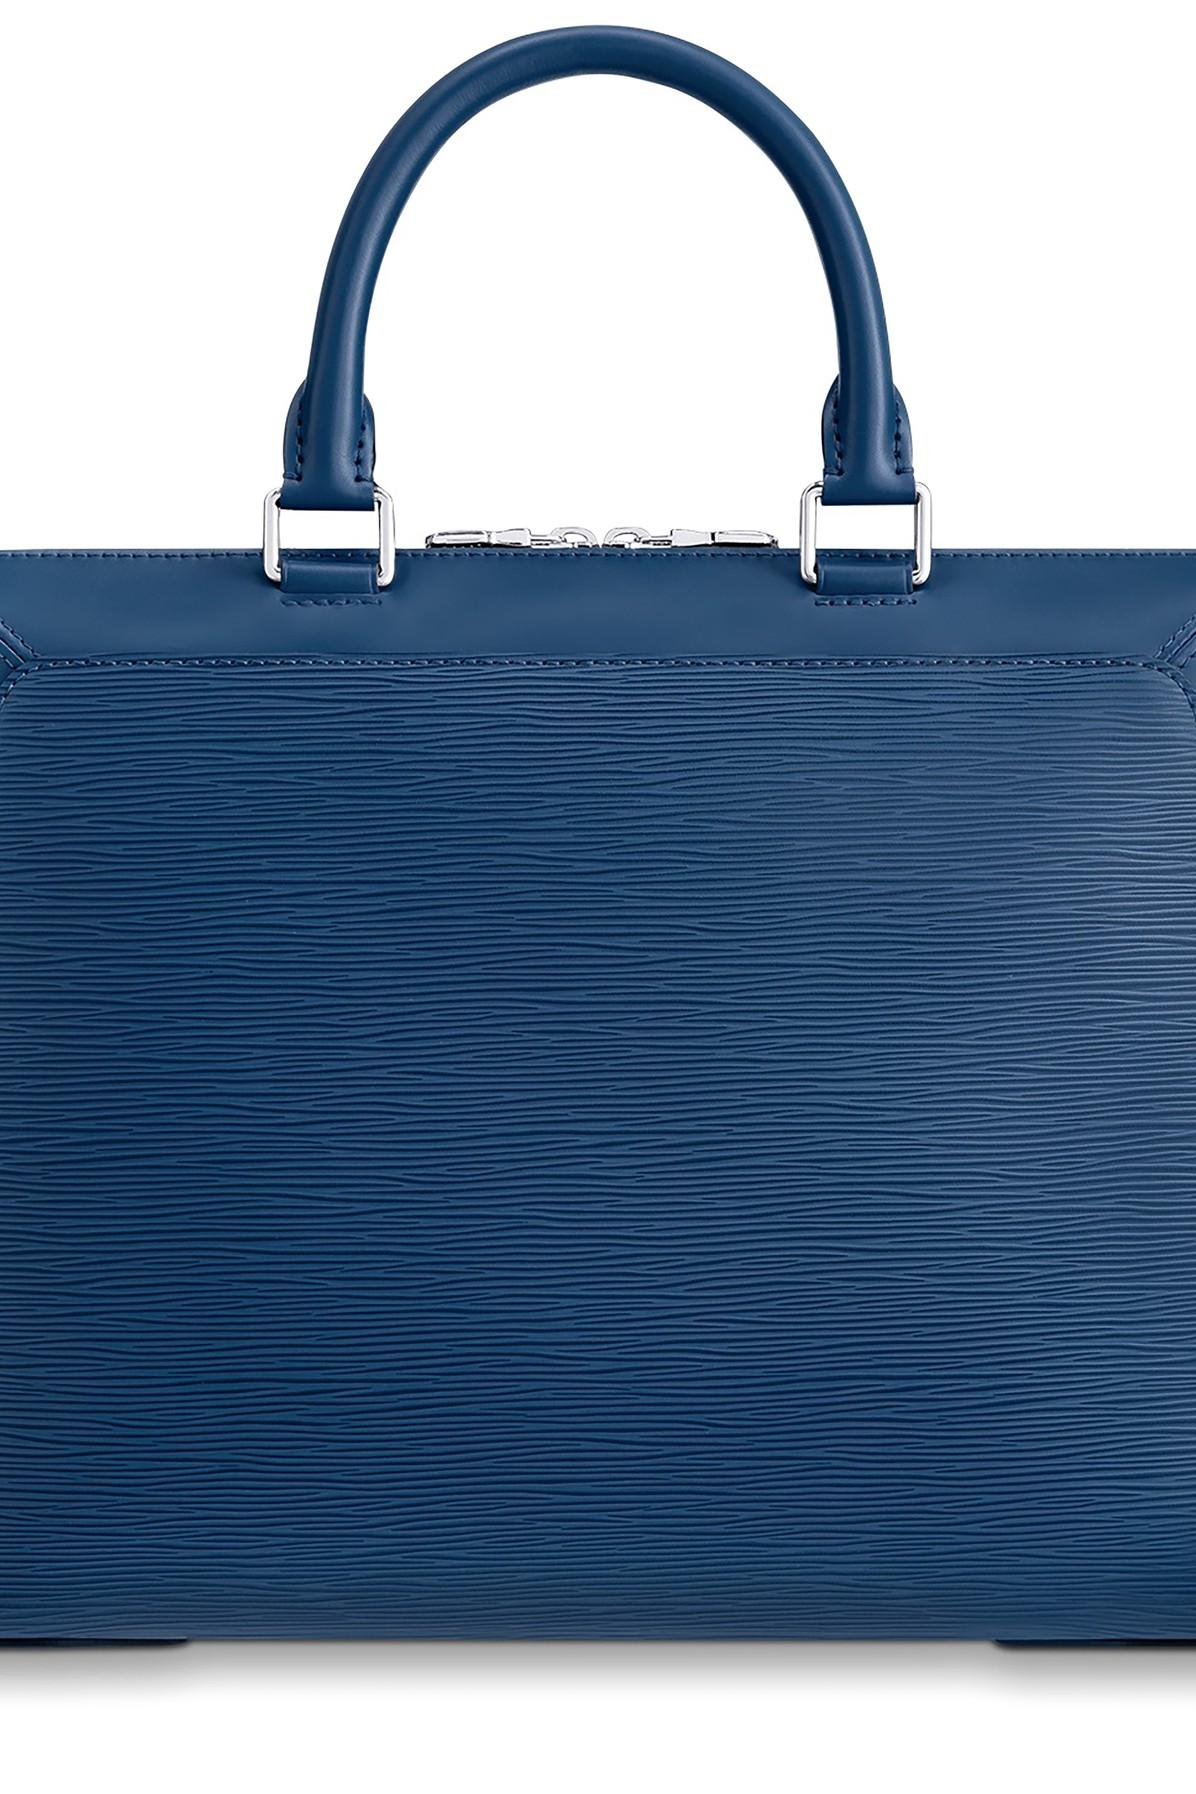 Louis Vuitton, Bags, Authentic Louis Vuitton Epi Riviera Toledo Blue  Briefcase Satchel Bag